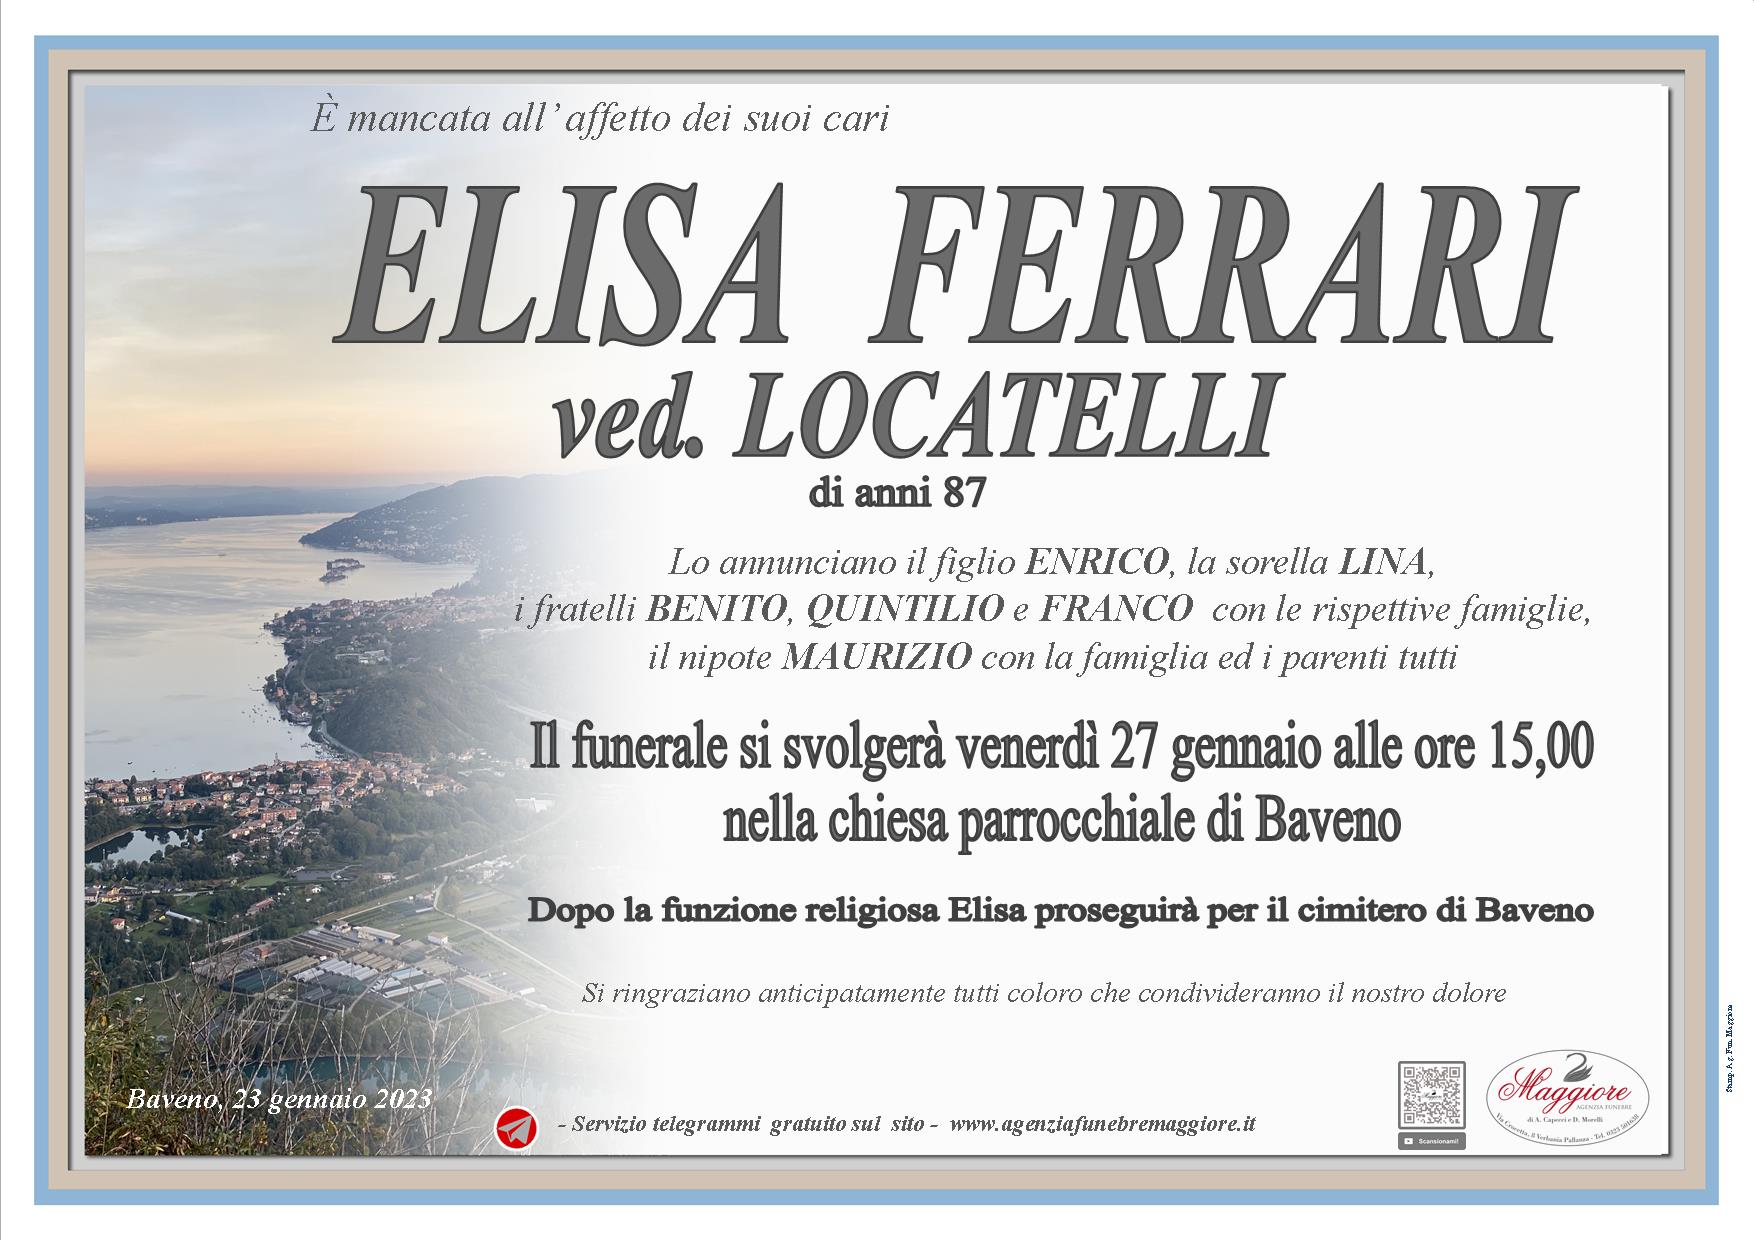 Elisa Ferrari ved. Locatelli